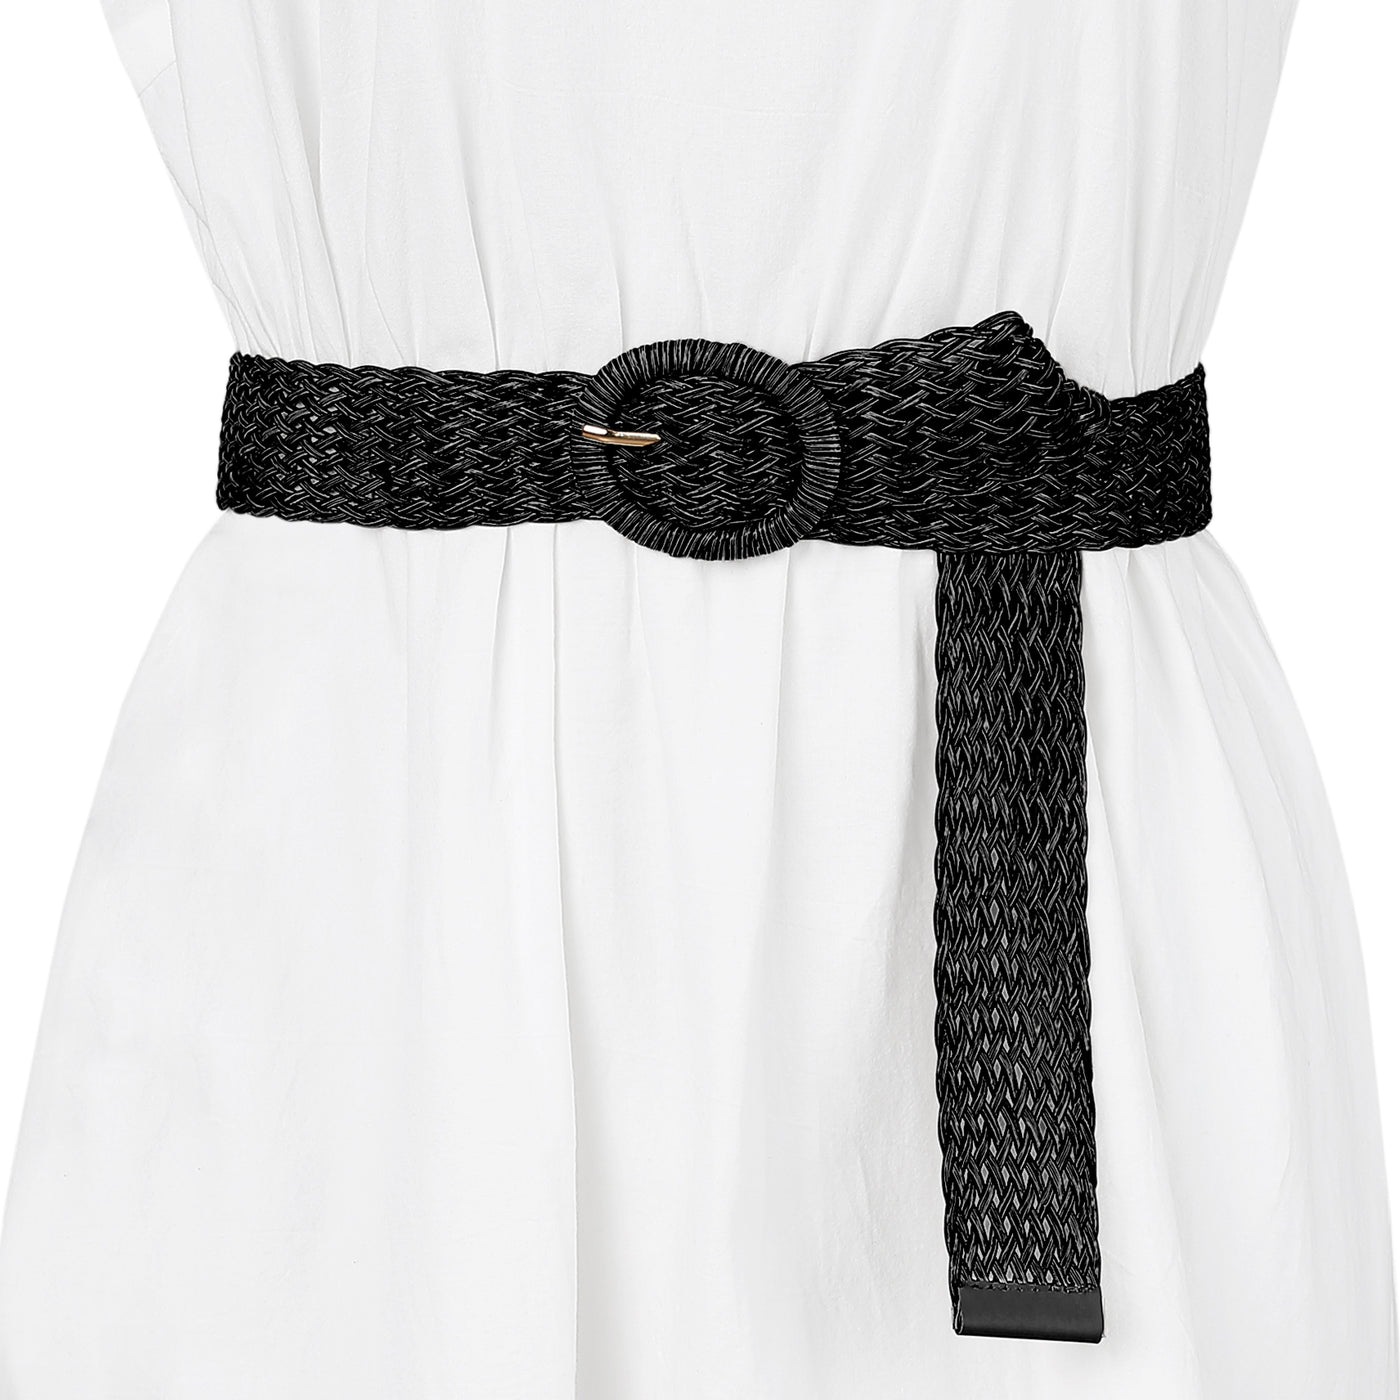 Allegra K Skinny Waist Braided Dress Round Metal Buckle Adjustable Belts